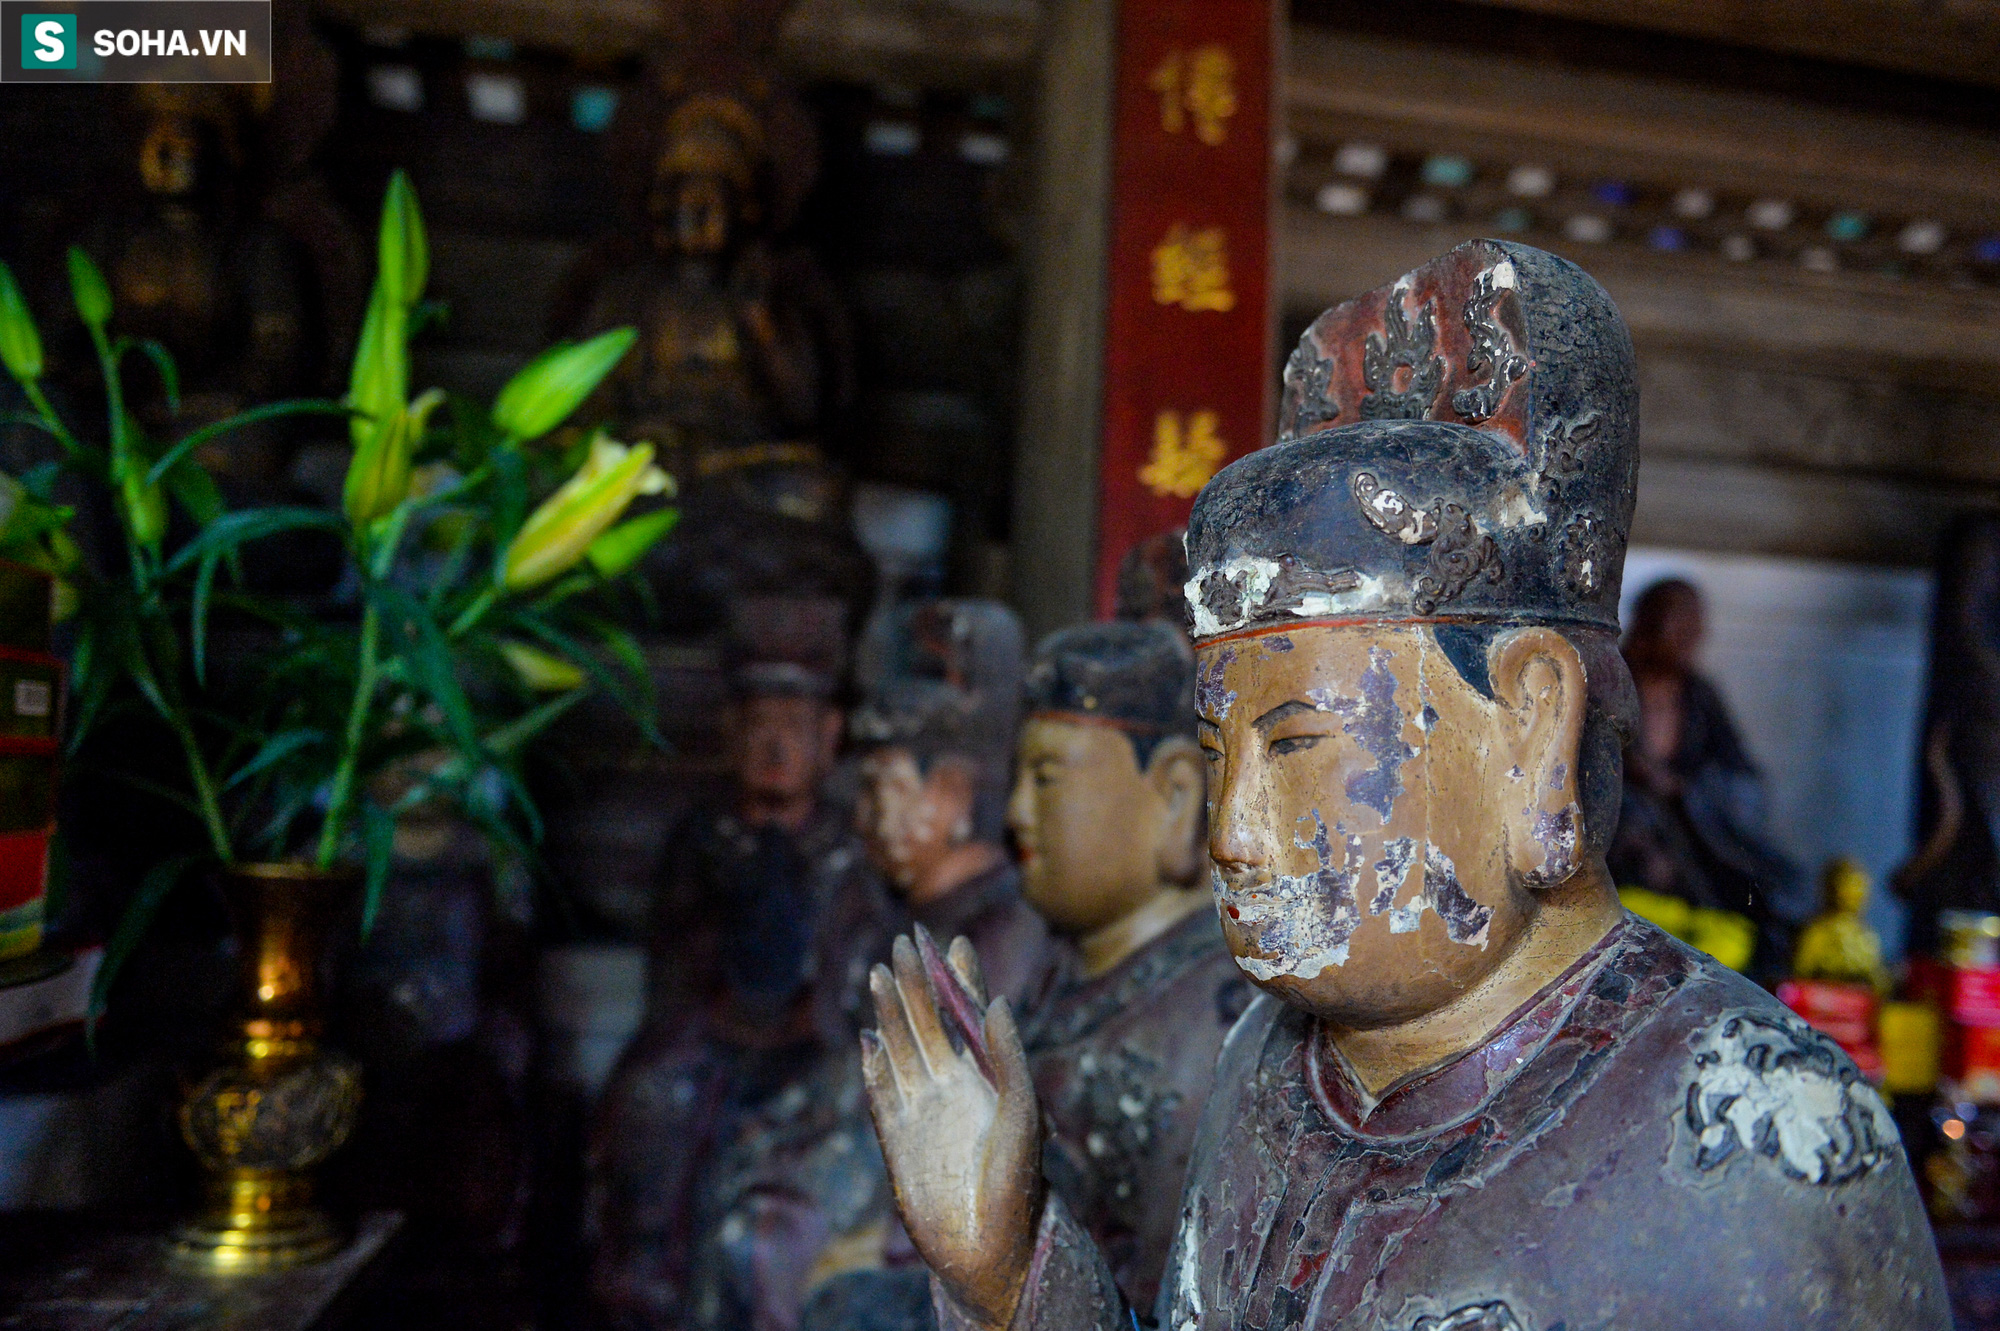 Cận cảnh các vị La Hán chùa Tây Phương xuống cấp nghiêm trọng, bong tróc hết lớp sơn son - Ảnh 7.